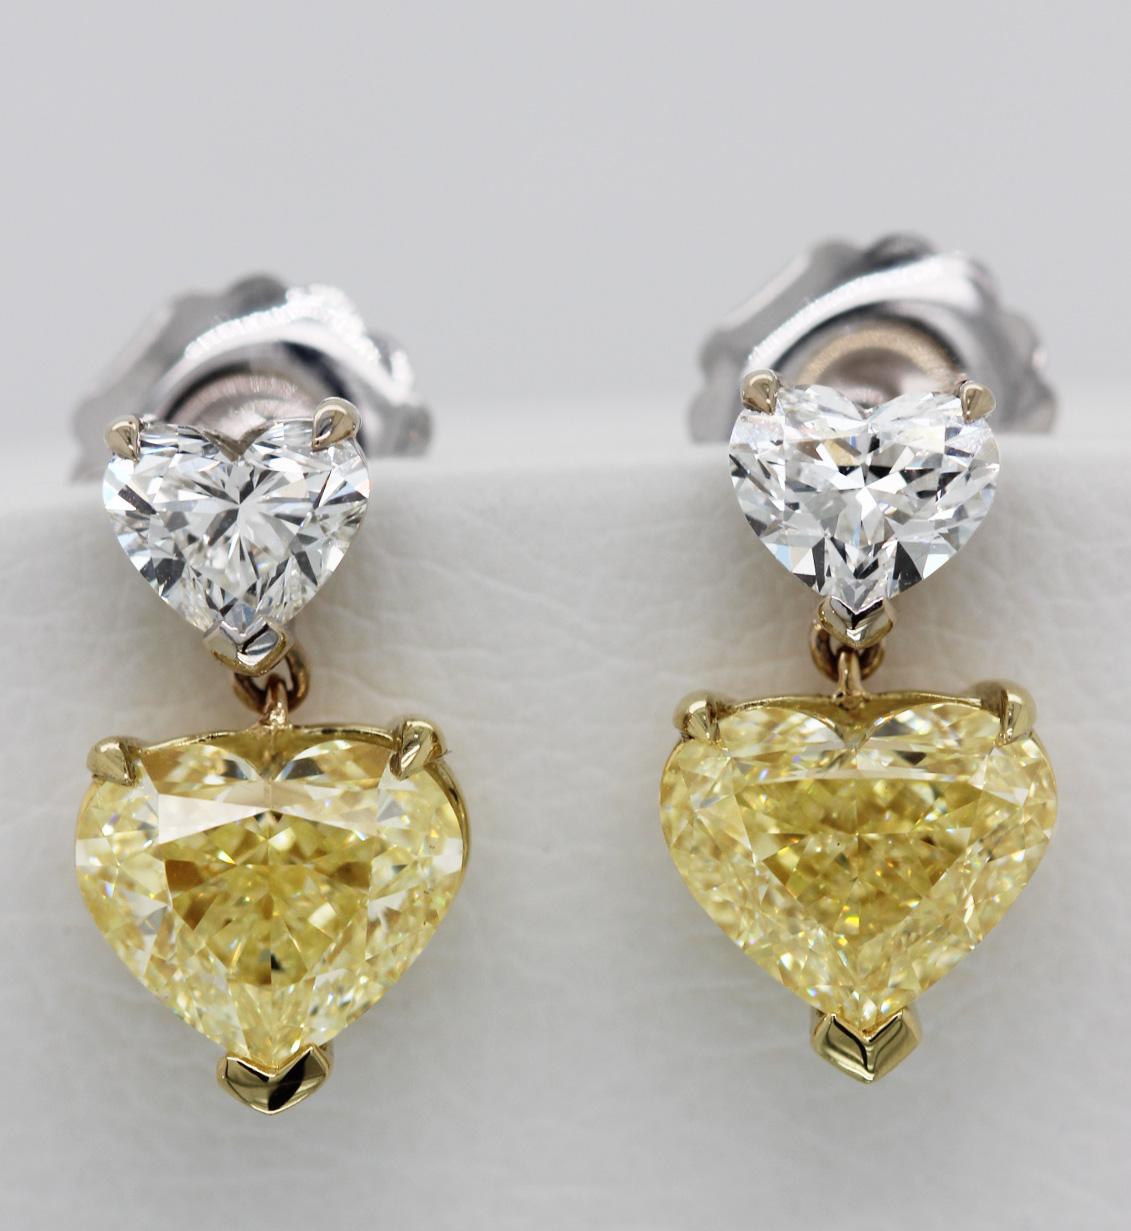 Ohrringe mit 3,77 Karat aus 18 Karat Gelbgold mit einem natürlichen Diamanten im Herzschliff. Ein Paar GIA-zertifizierte Diamantohrringe mit einem Paar hellgelber Diamanten, die von kleineren weißen Diamanten im Herzschliff begleitet werden - ein